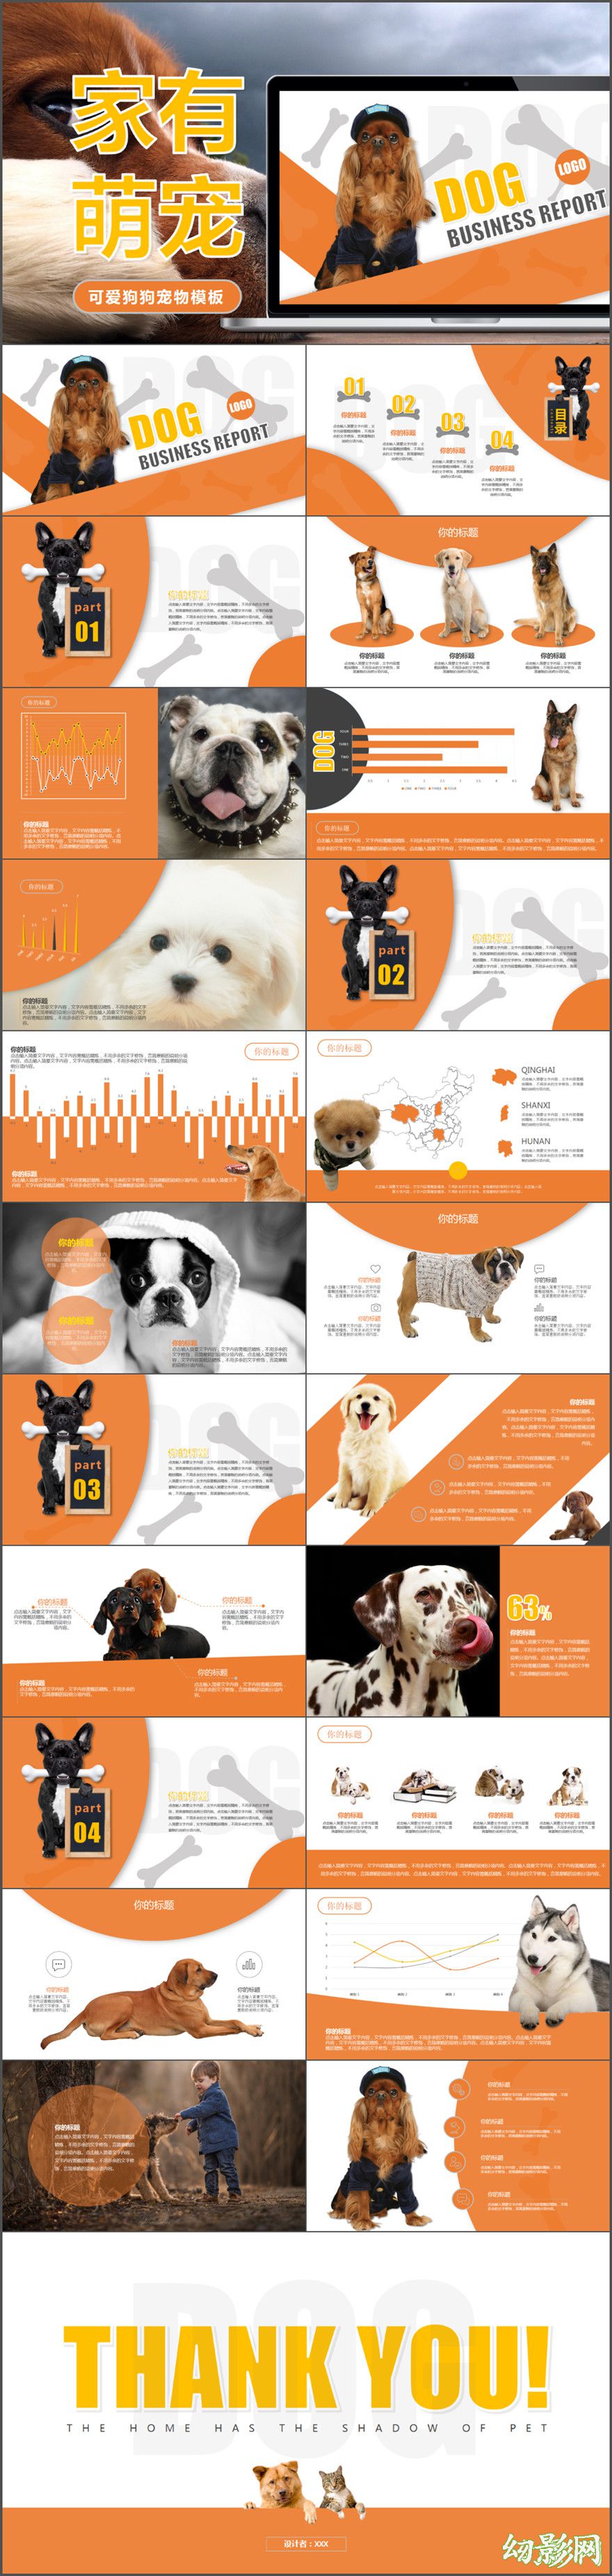 宠物狗饲养品种介绍动态PPT模板